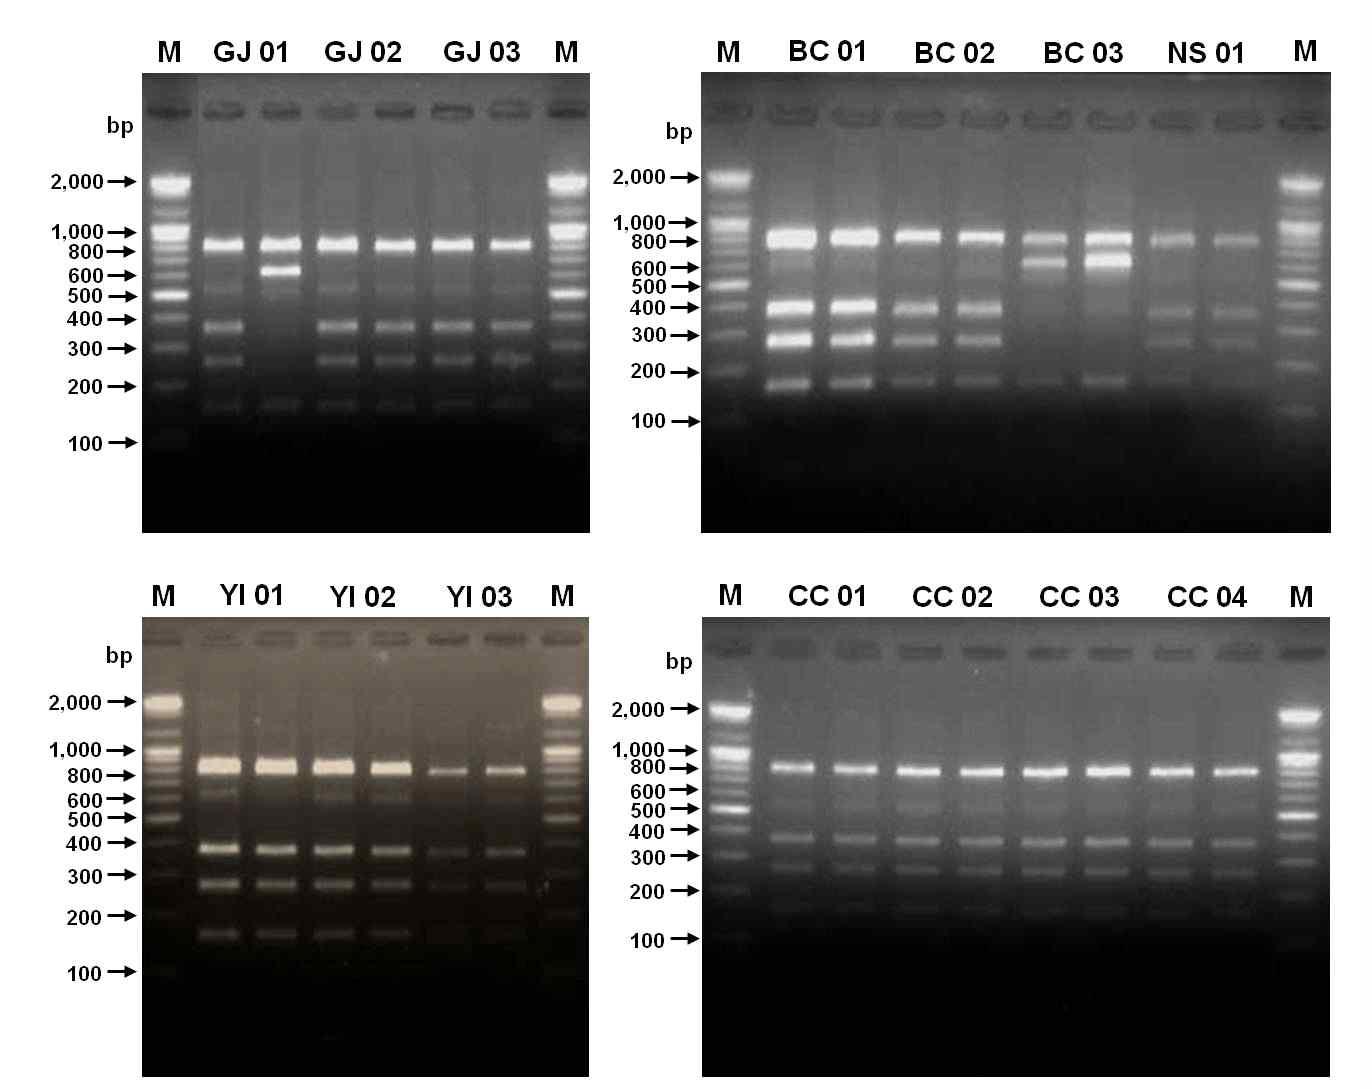 뿌리혹선충의 mitochondrial COⅡ-16S rRNA 유전자를 이용한 PCR-RFLP 밴드 양상